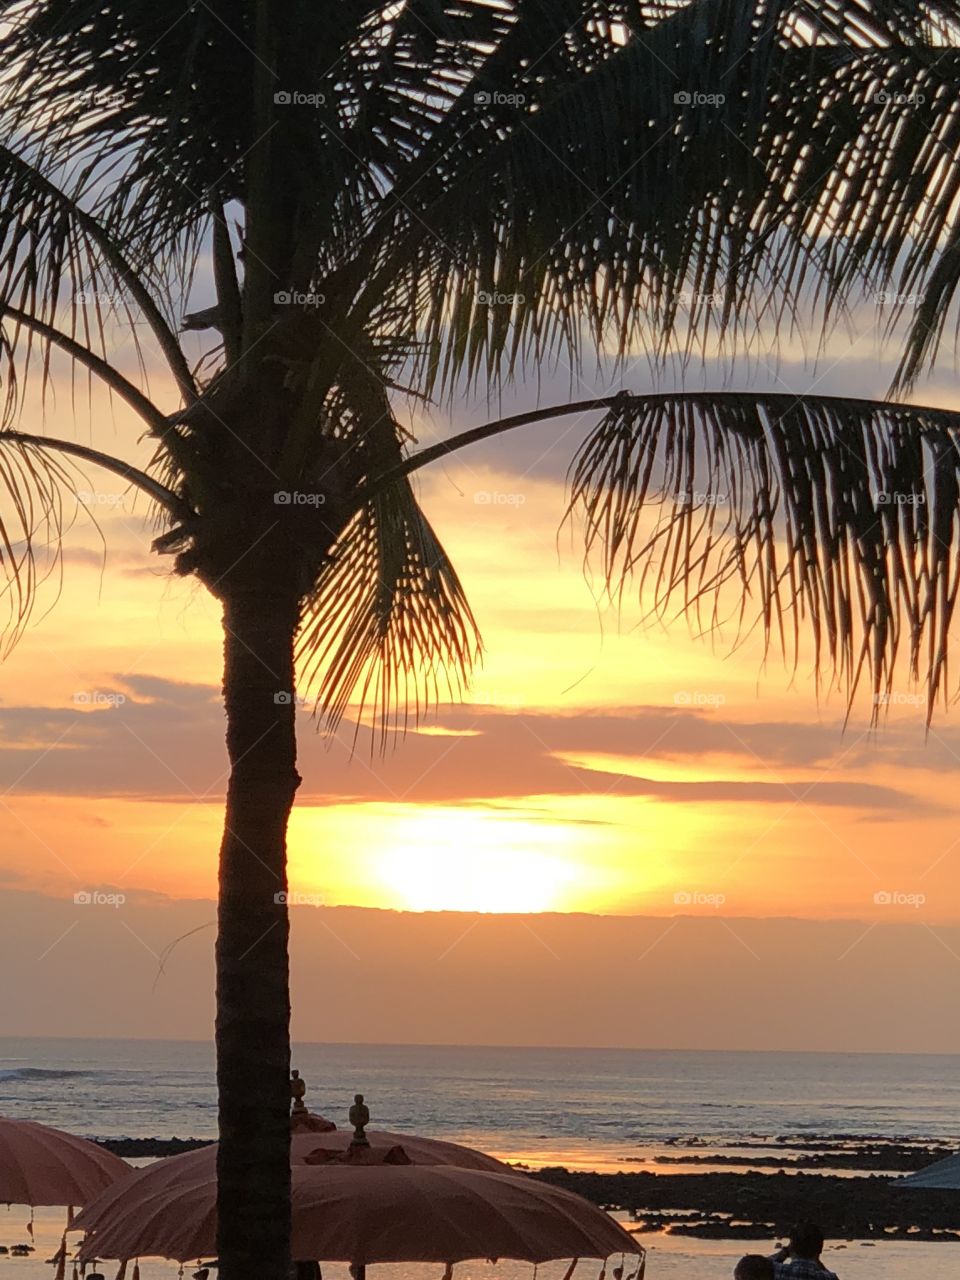 Bali sunrise 